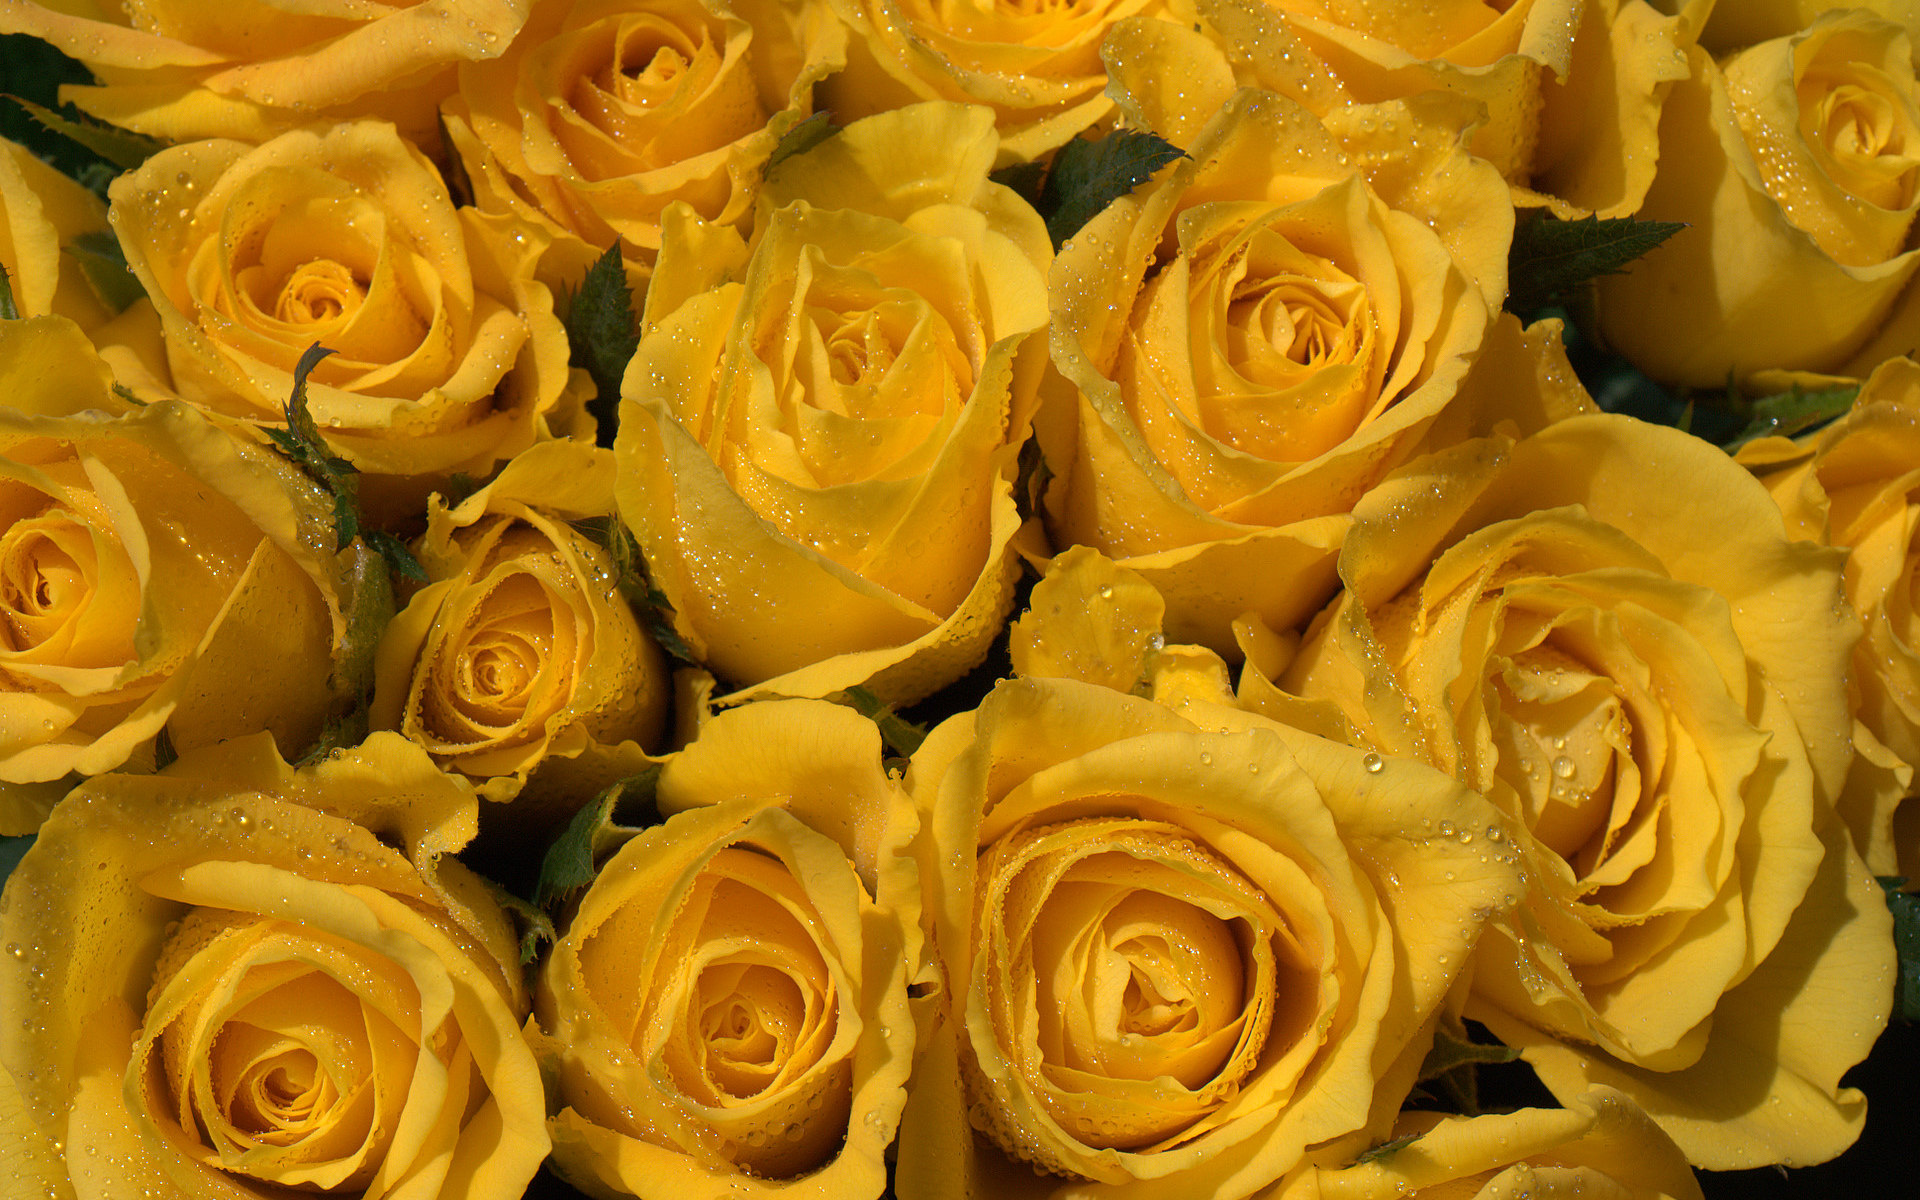 Yellow Roses Wallpaper